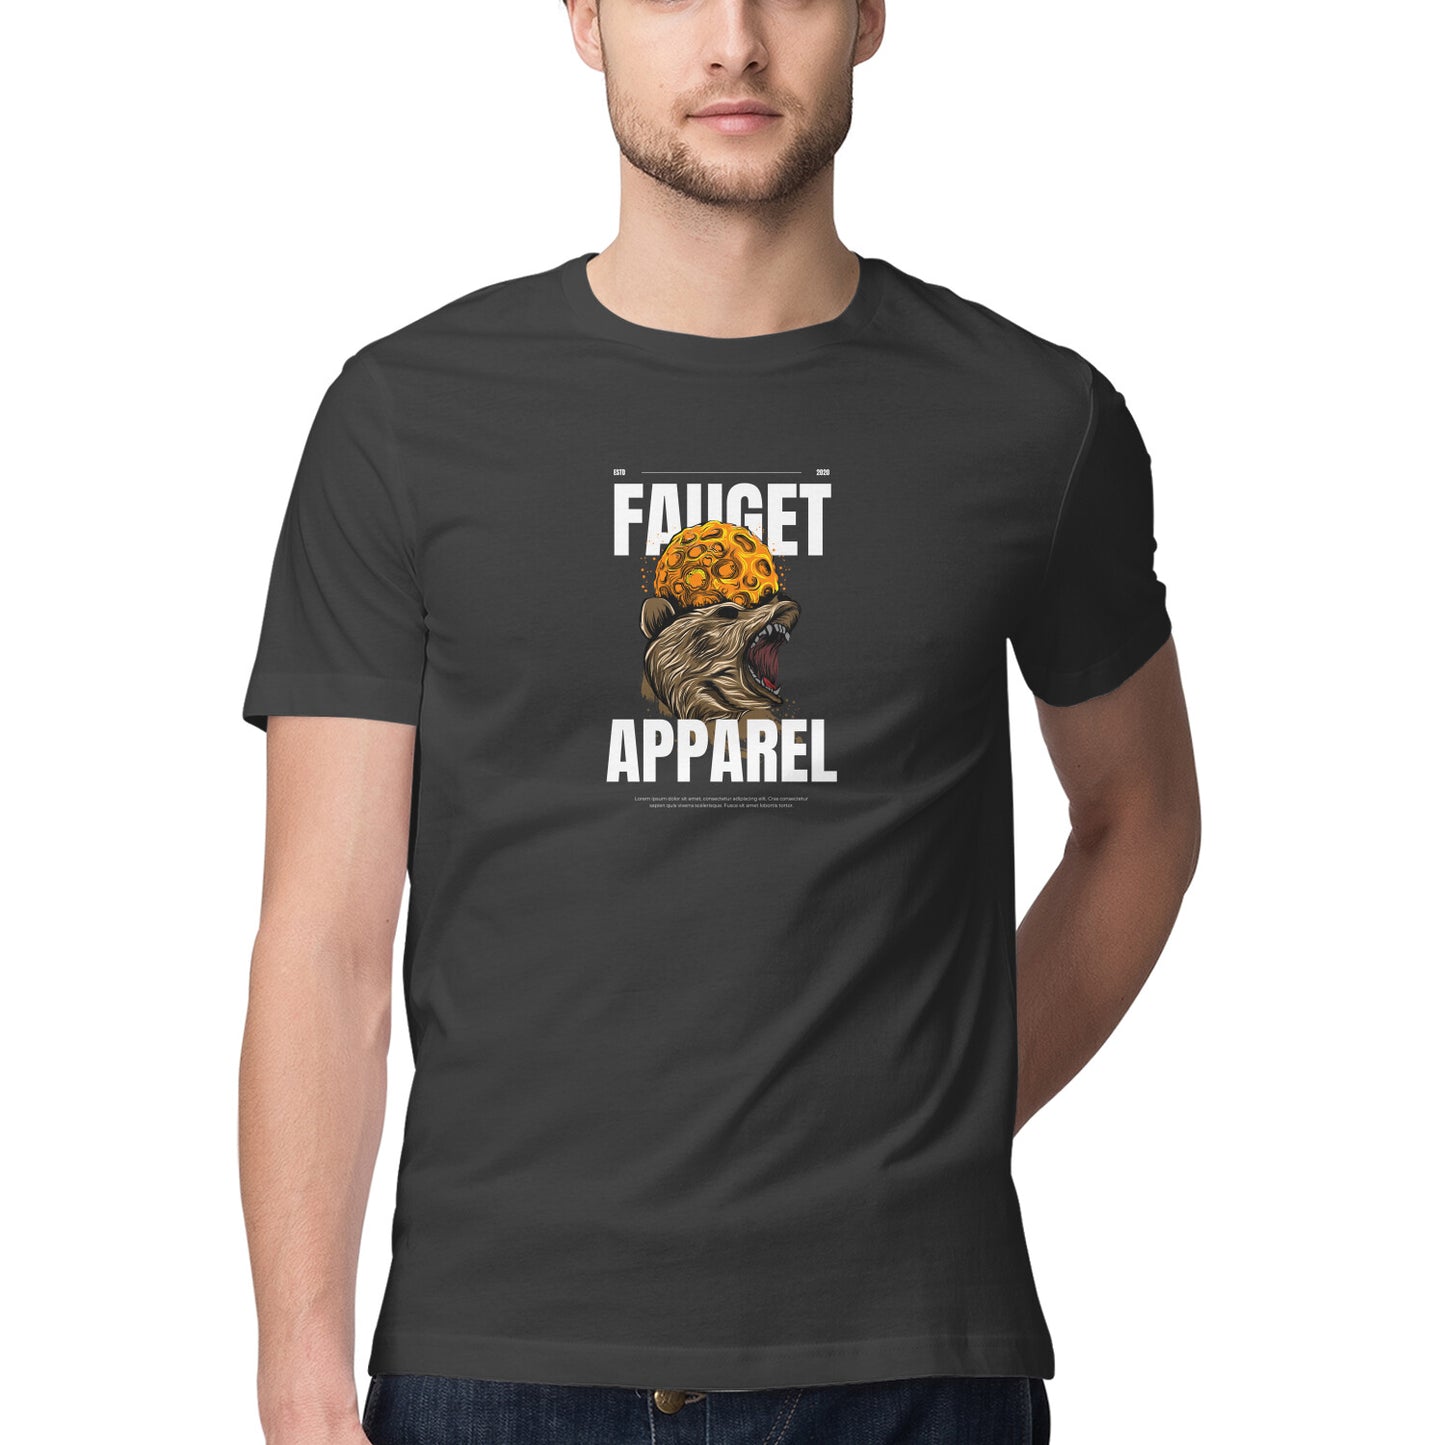 Fauget Apparel - Sleek Design T-shirt - Men